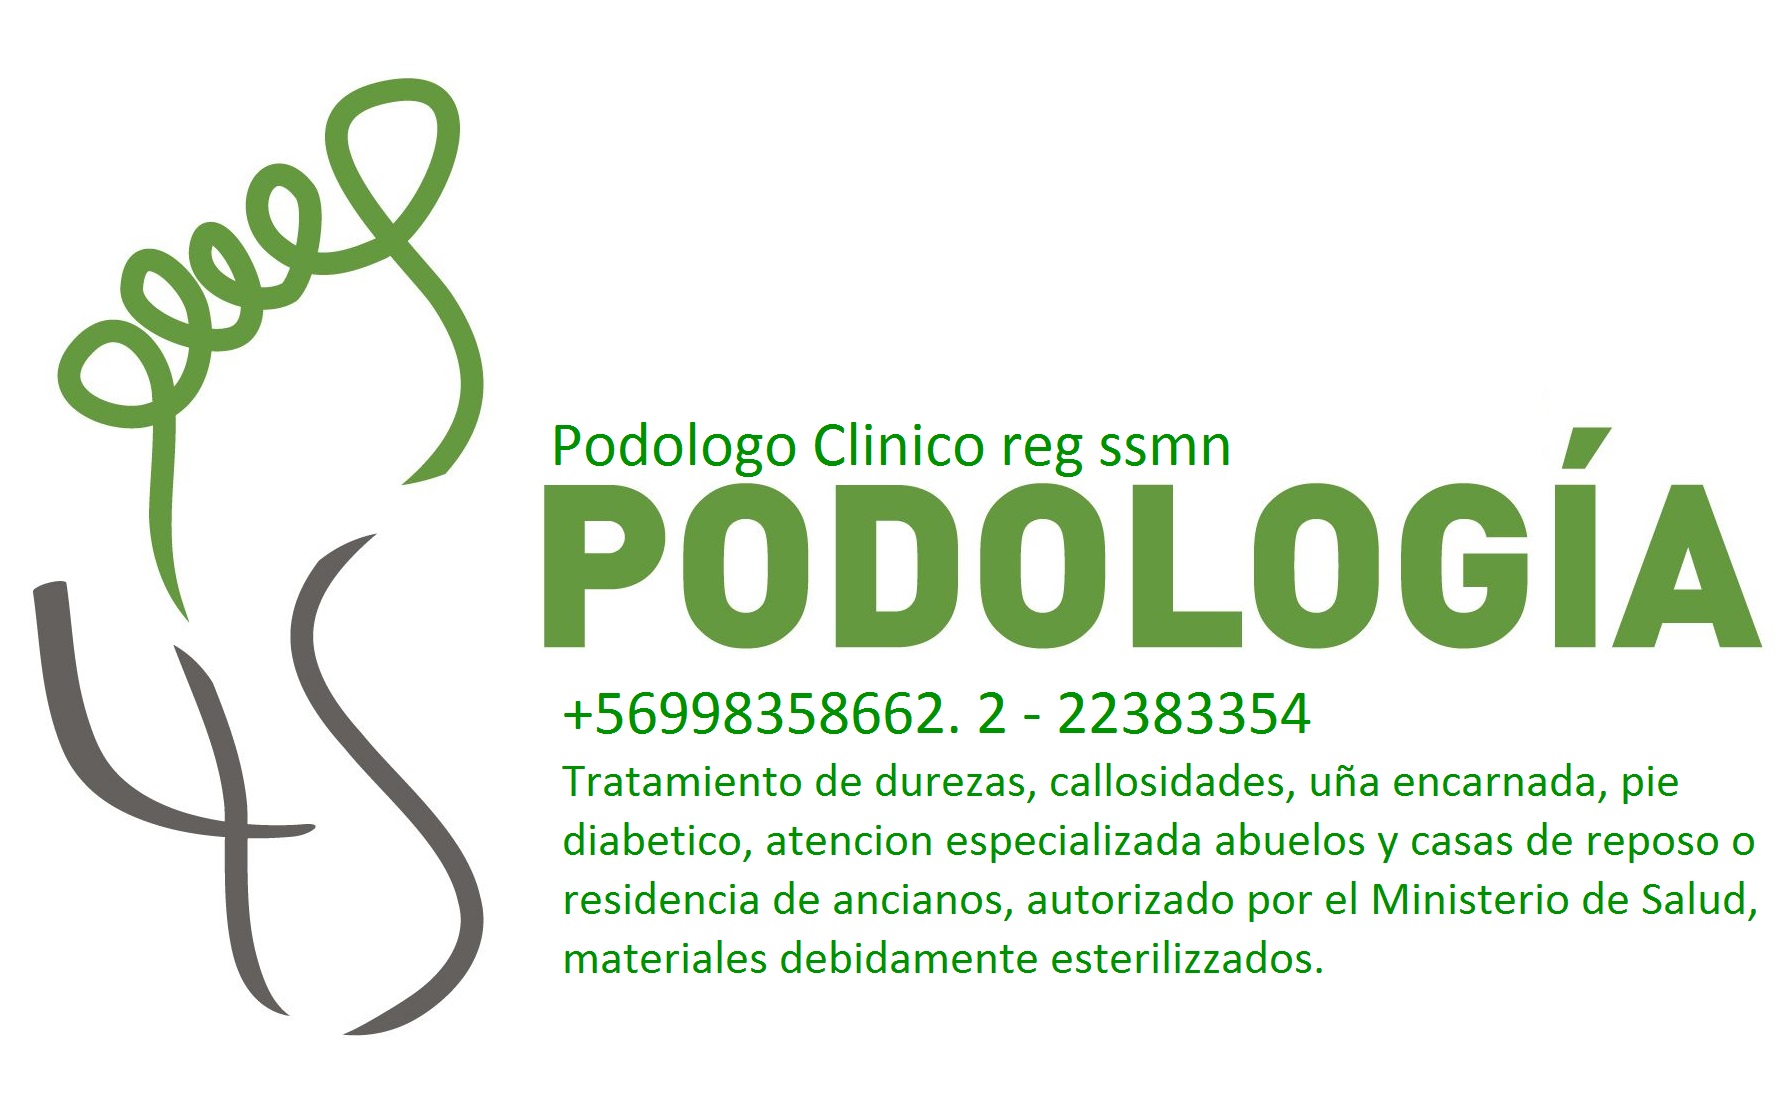 PODOLOGIA DEPORTIVA Providencia +569 98358662